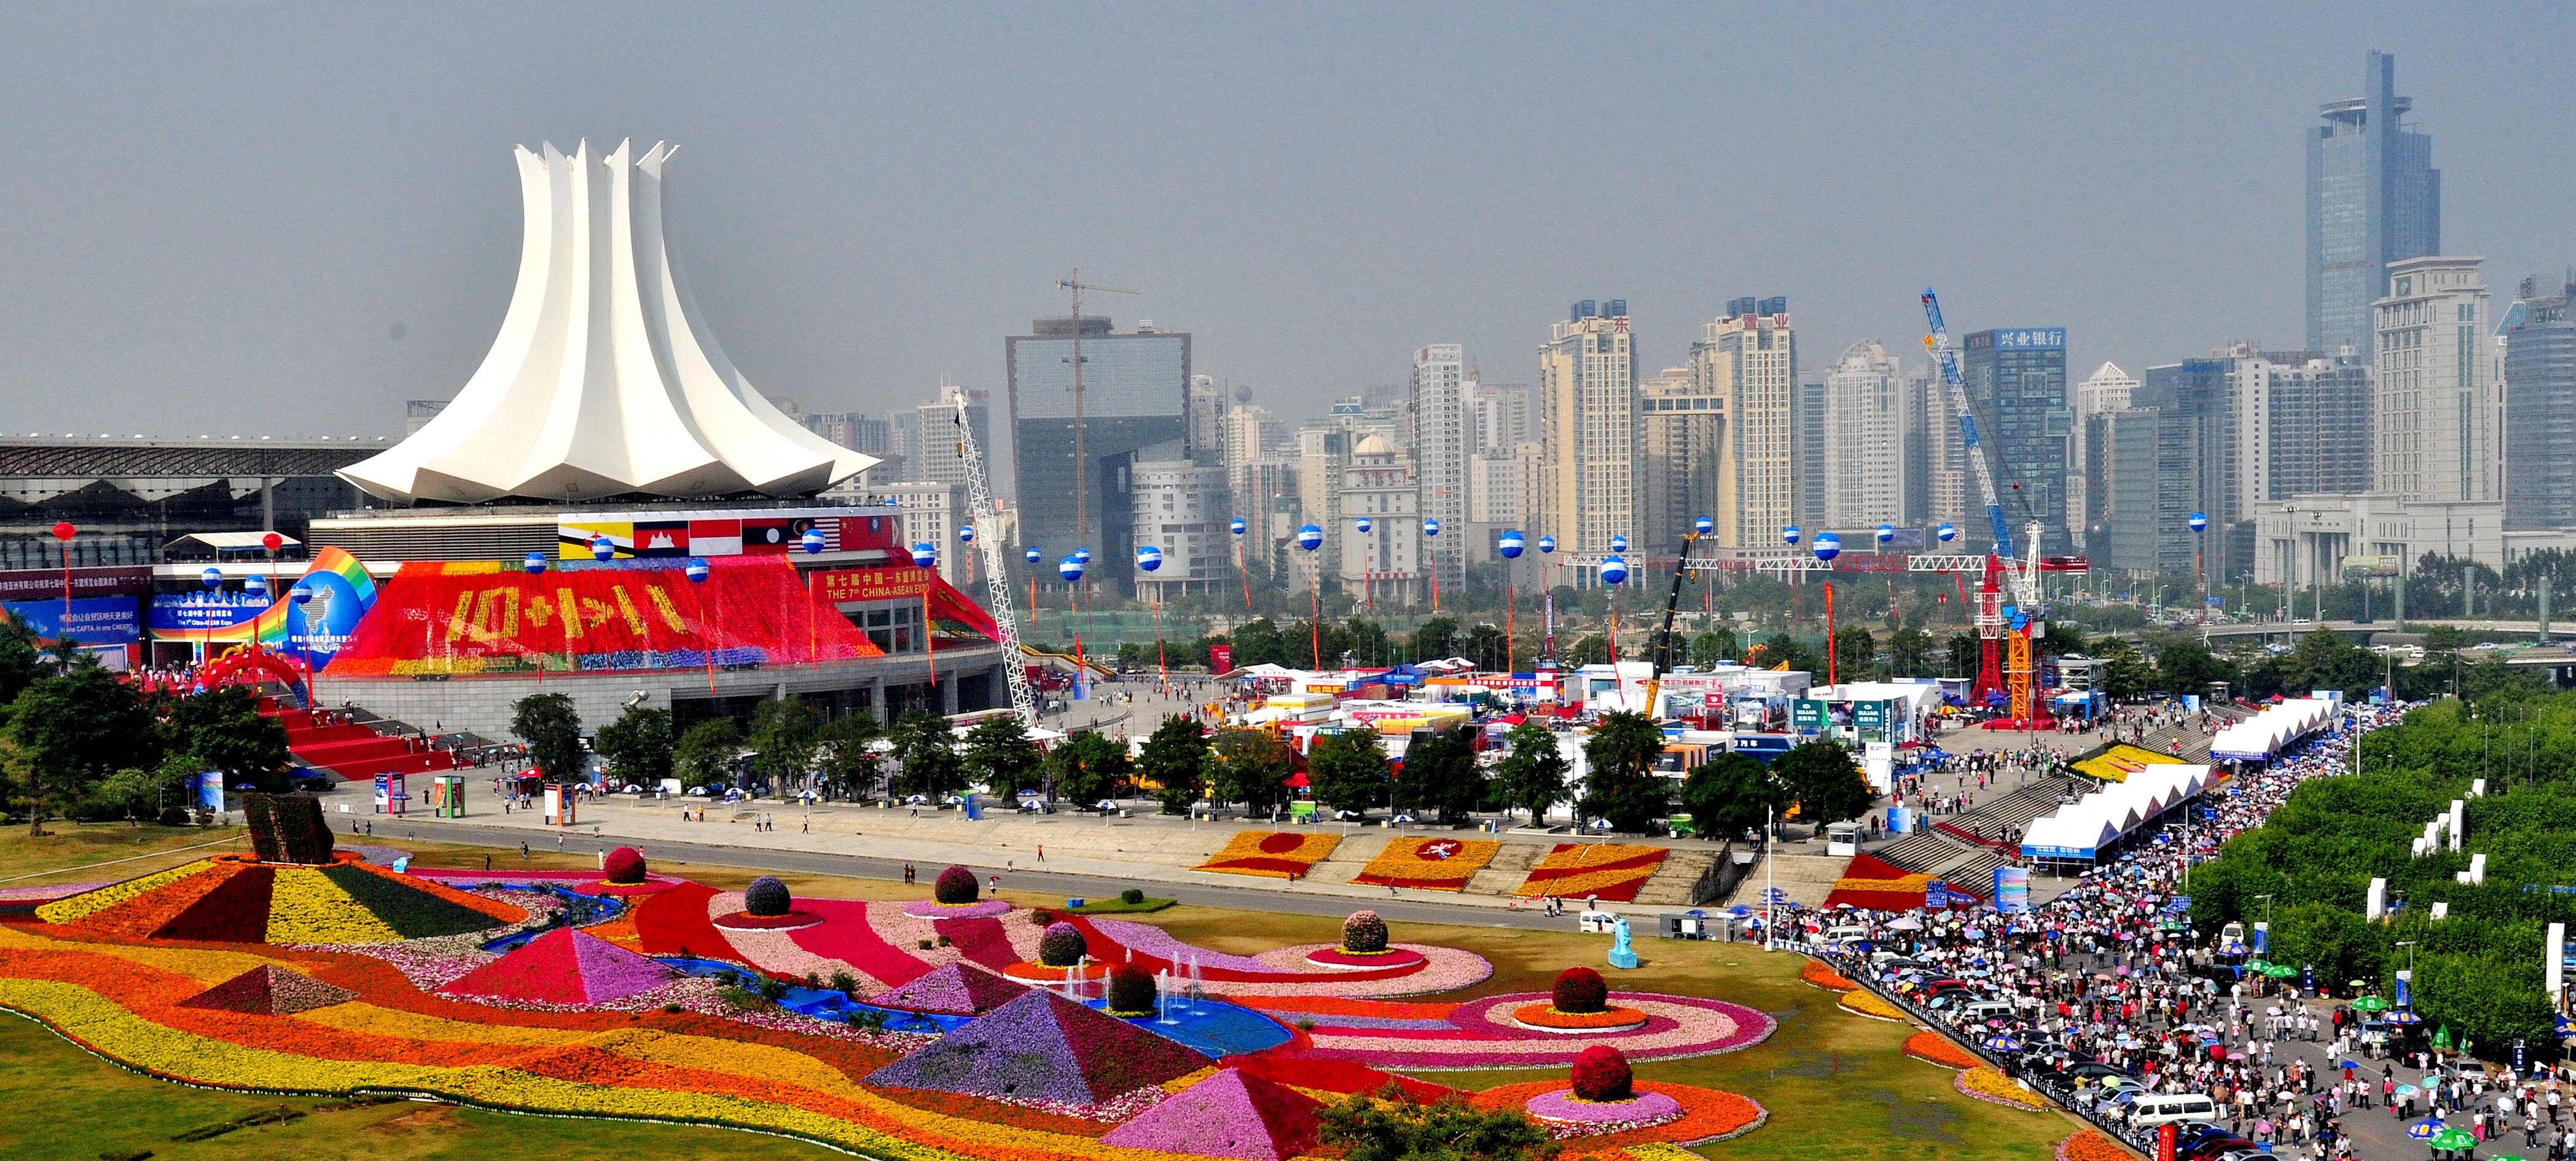 The China-ASEAN Expo exhibition center